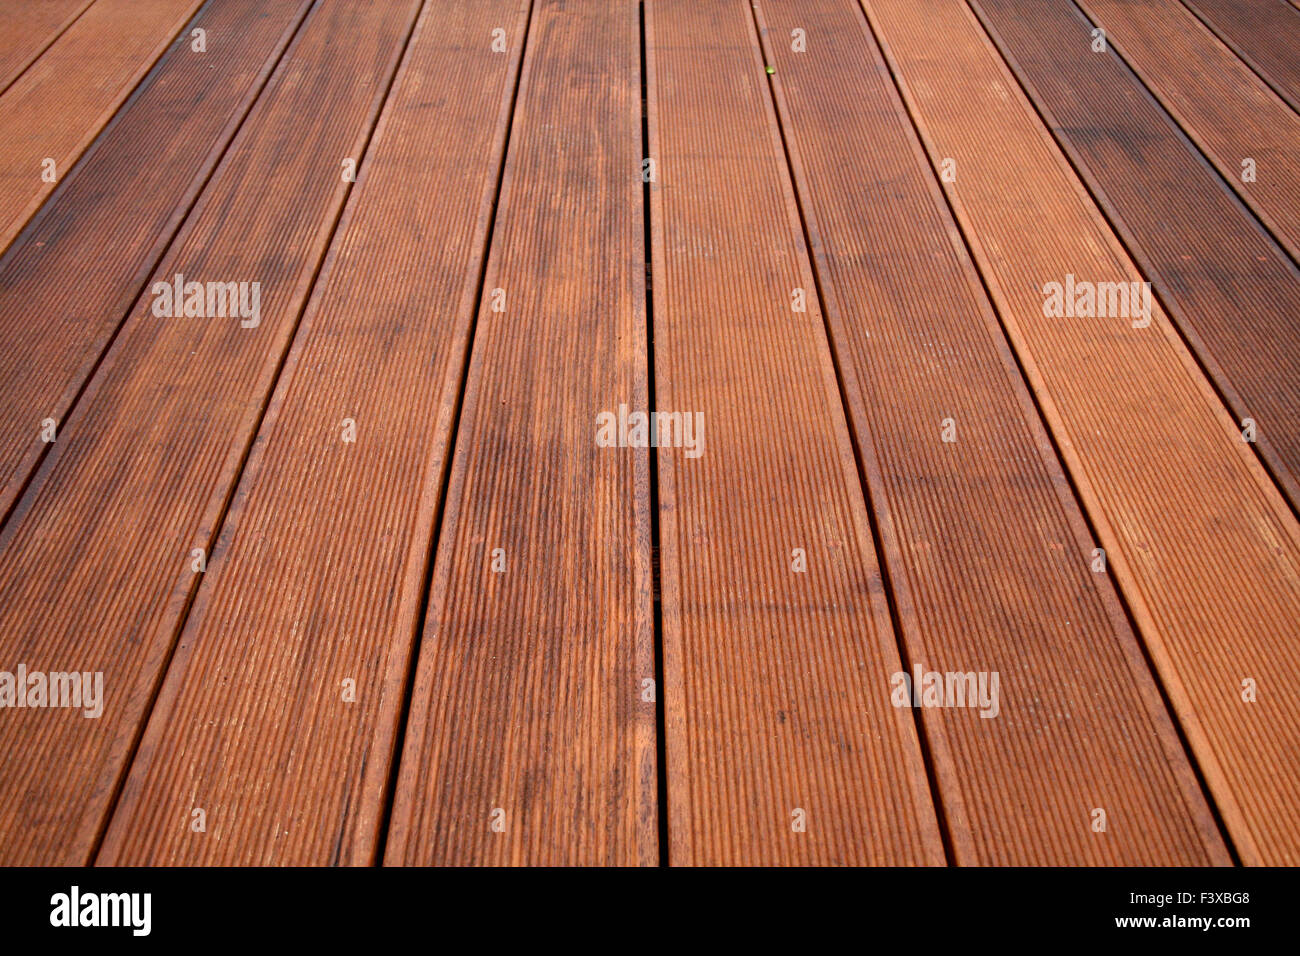 African oak floor texture Stock Photo